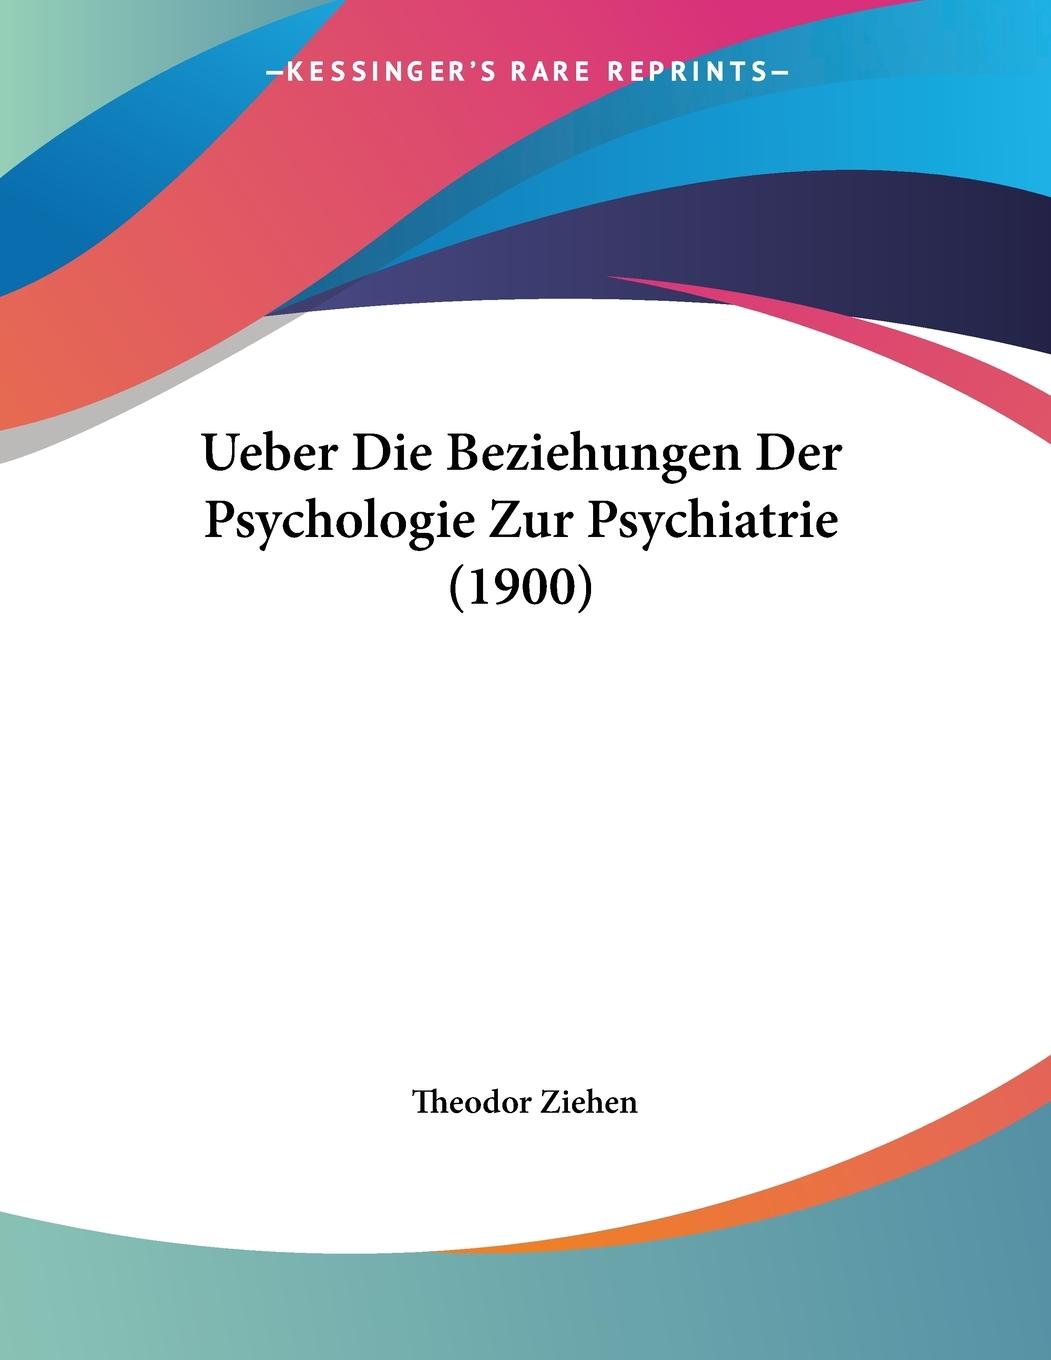 Ueber Die Beziehungen Der Psychologie Zur Psychiatrie (1900) / Theodor Ziehen / Taschenbuch / Paperback / Deutsch / 2010 / Kessinger Publishing, LLC / EAN 9781160263092 - Ziehen, Theodor